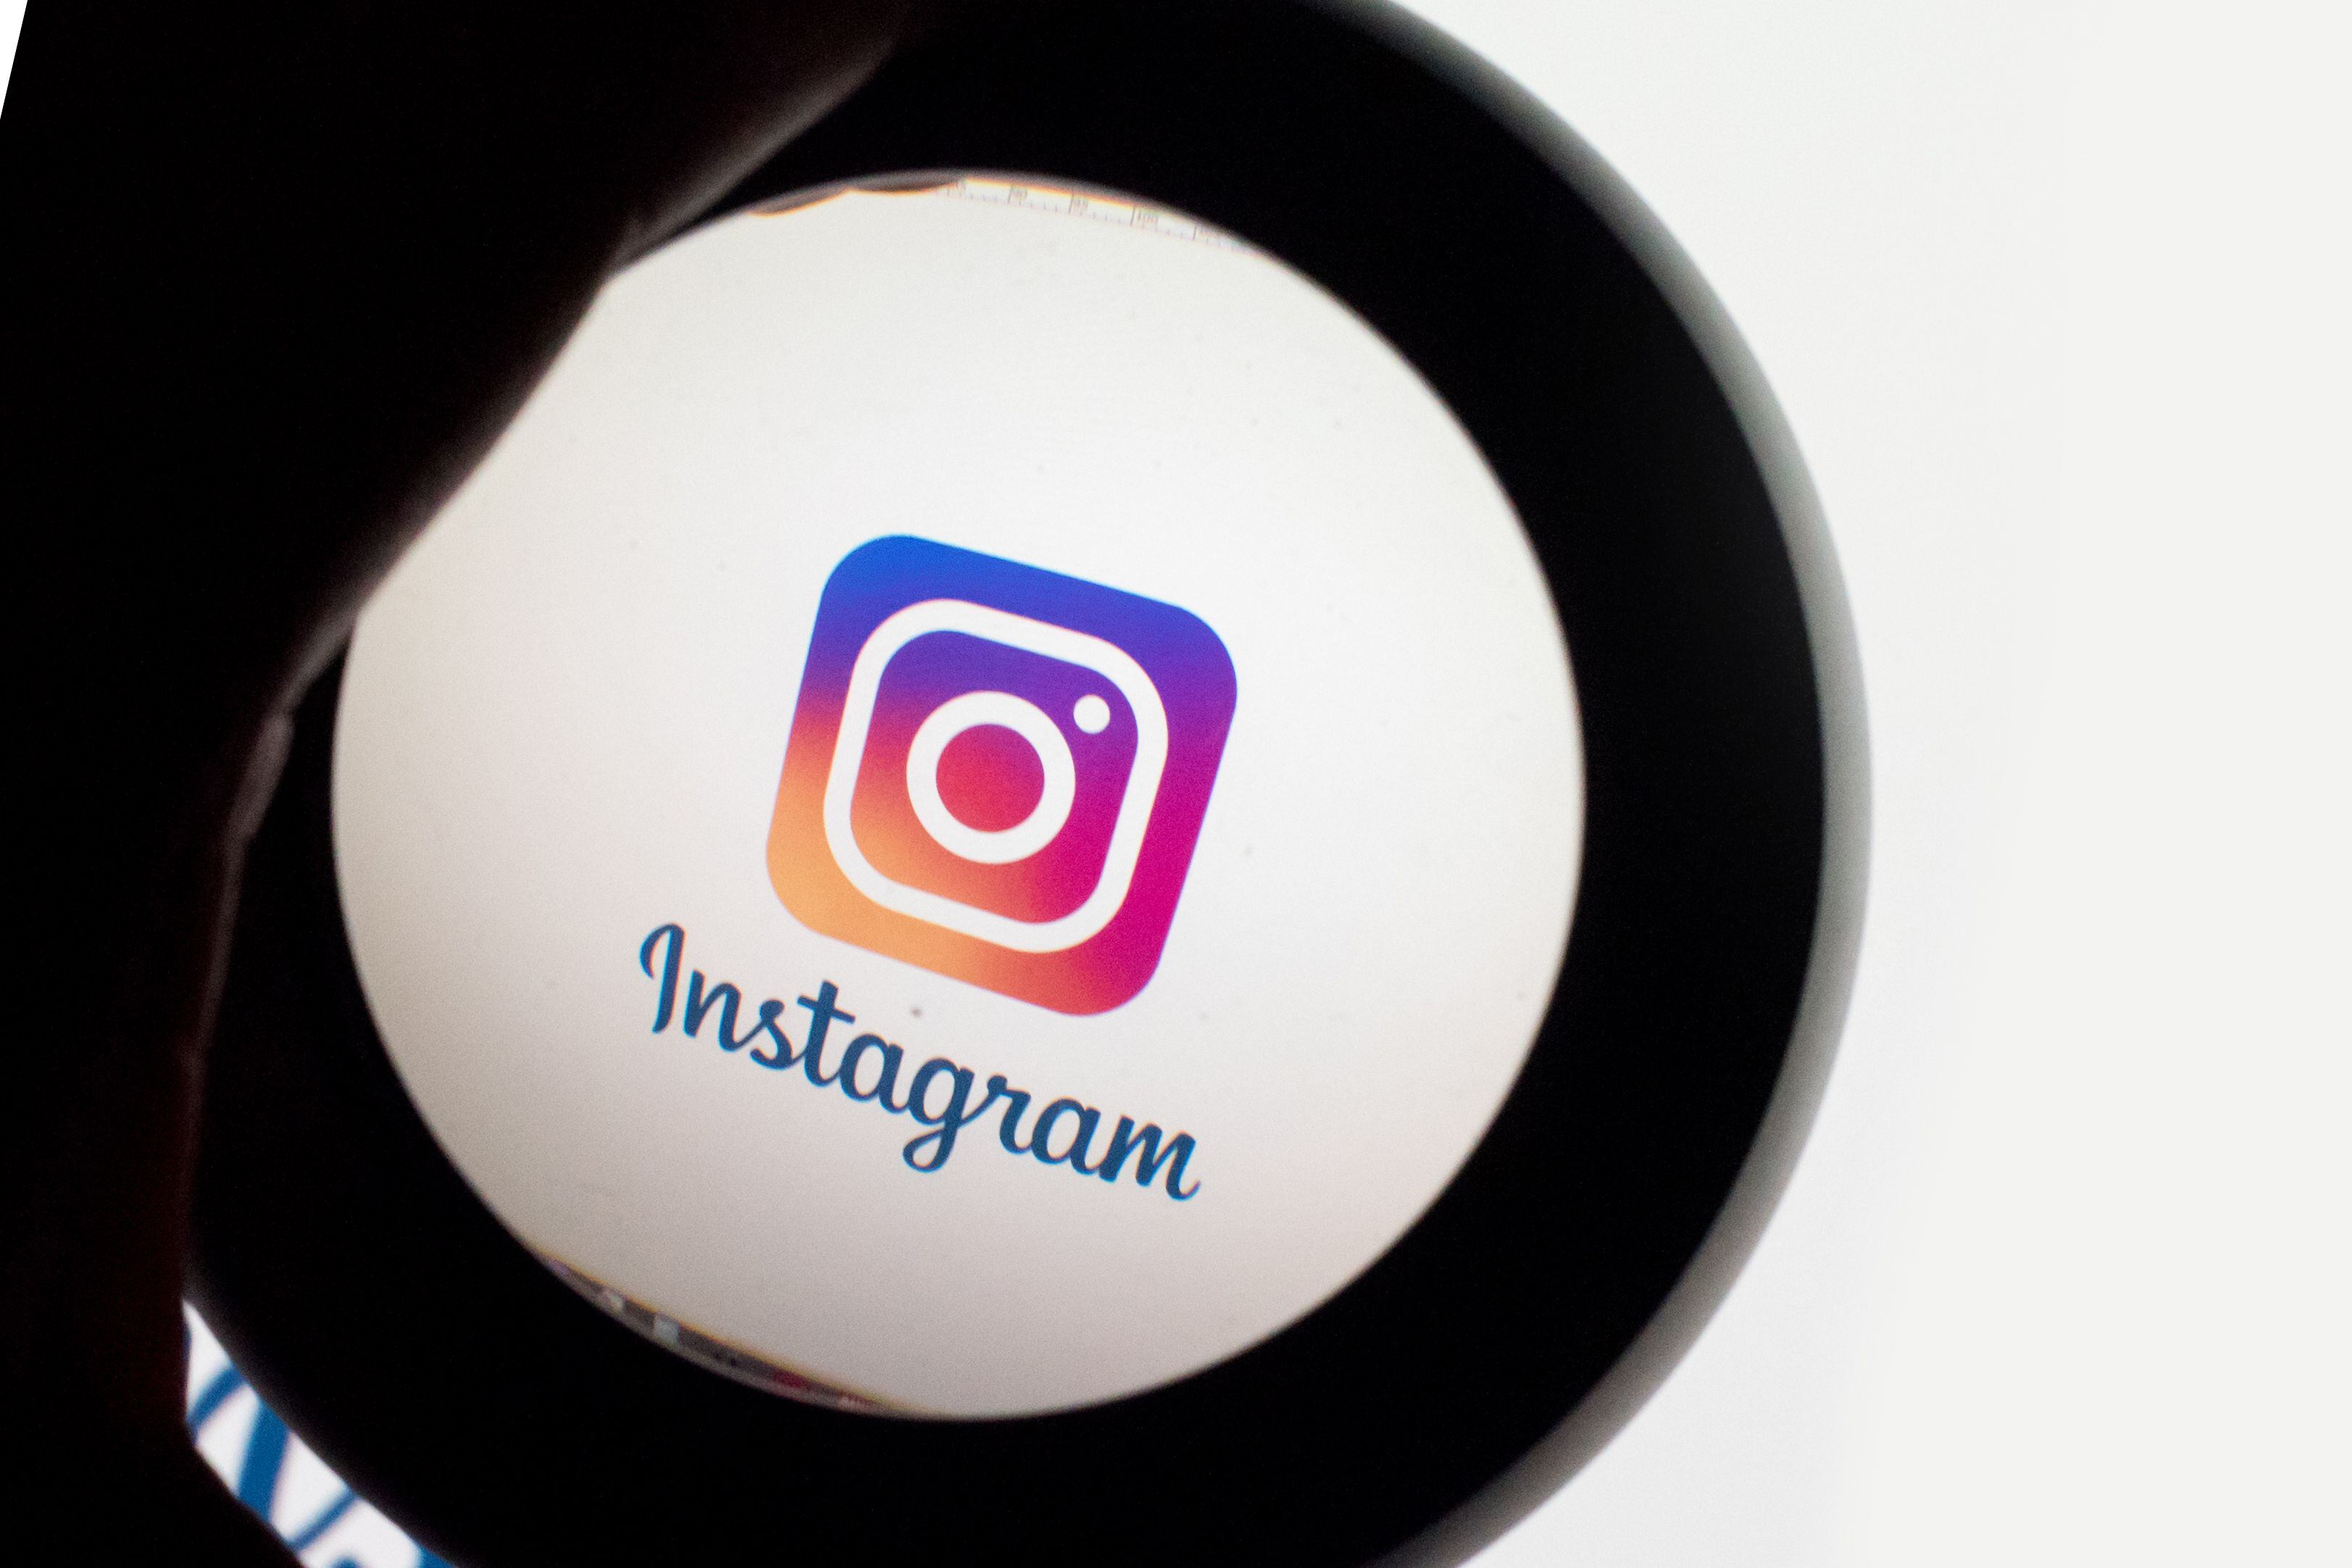 En materia de contenido como videos menores a tres minutos y fotos, Instagram es la red social que más se usa. (Foto: Europa Press)